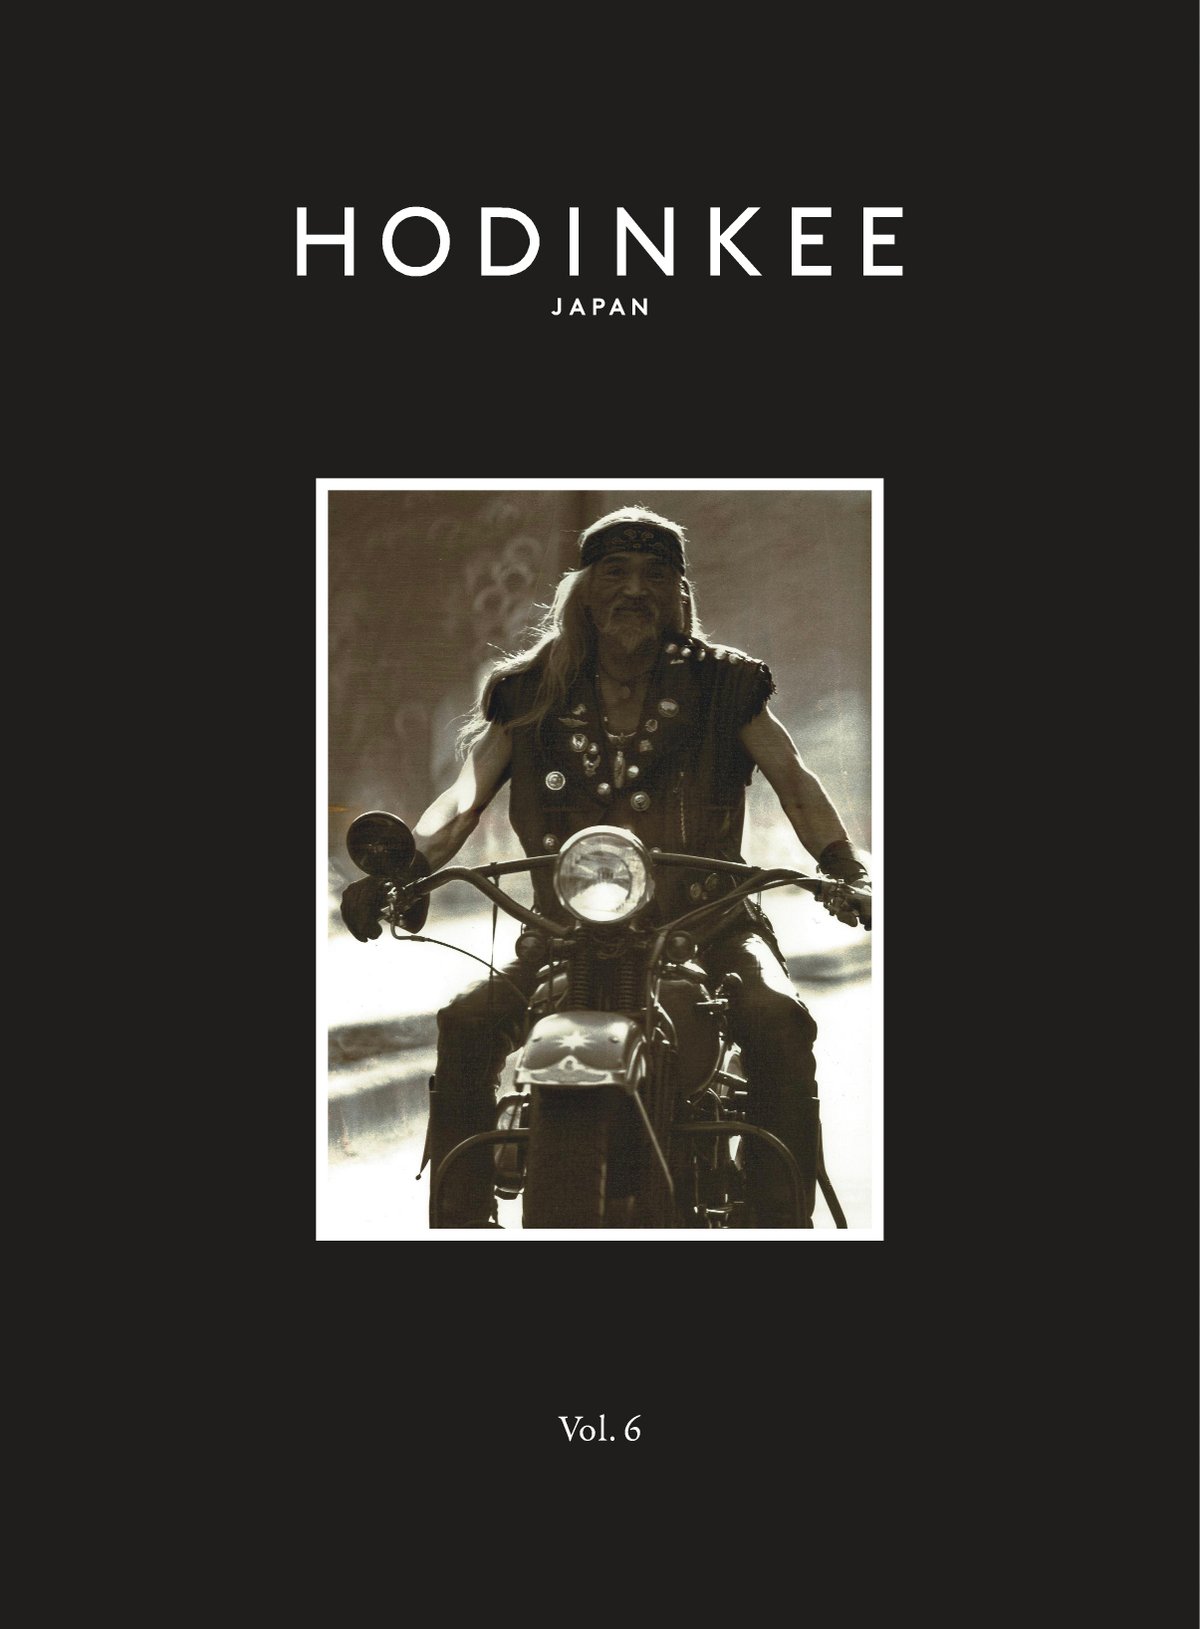 インディアンジュエリーショップ「ゴローズ」の創立者 高橋吾郎の写真を表紙にした「HODINKEE Magazine」